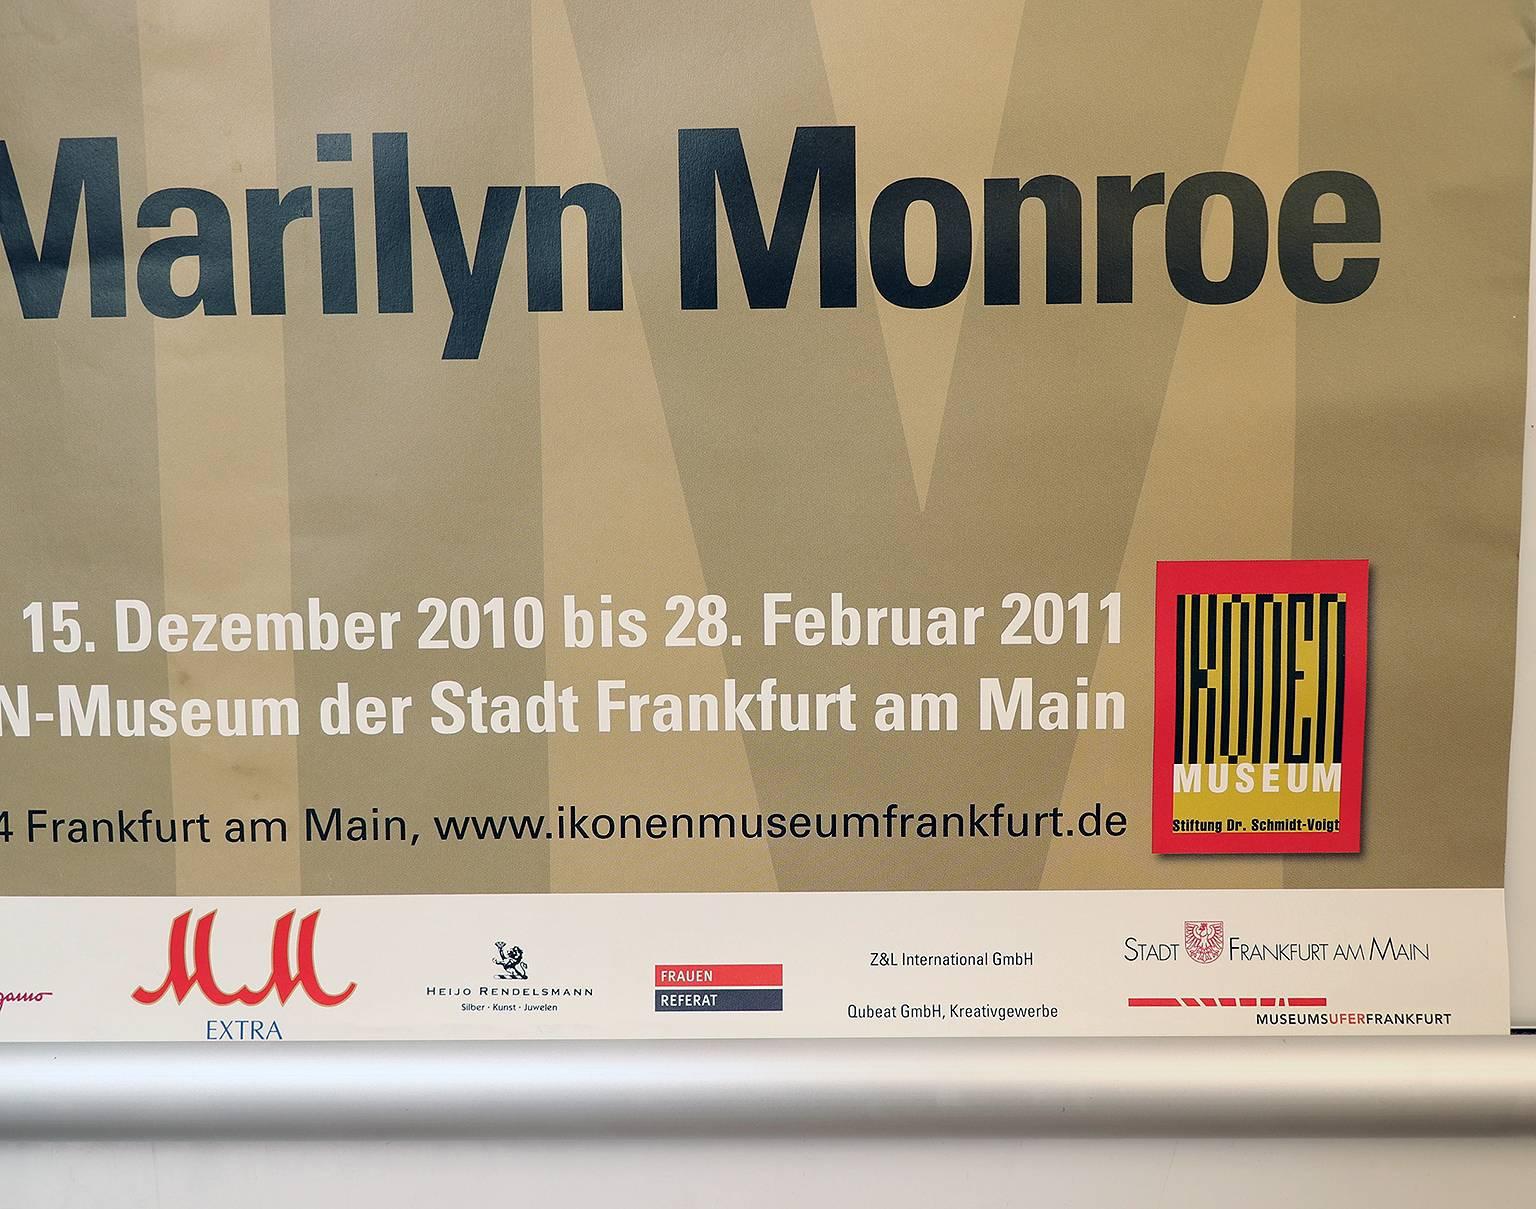 Marilyn Monroe, affiche d'exposition allemande Francfort, 2010-2011.
Non encadré, n'a pas été plié, enroulé.
Diamètre de la taille A1 : 594 x 841 mm. 